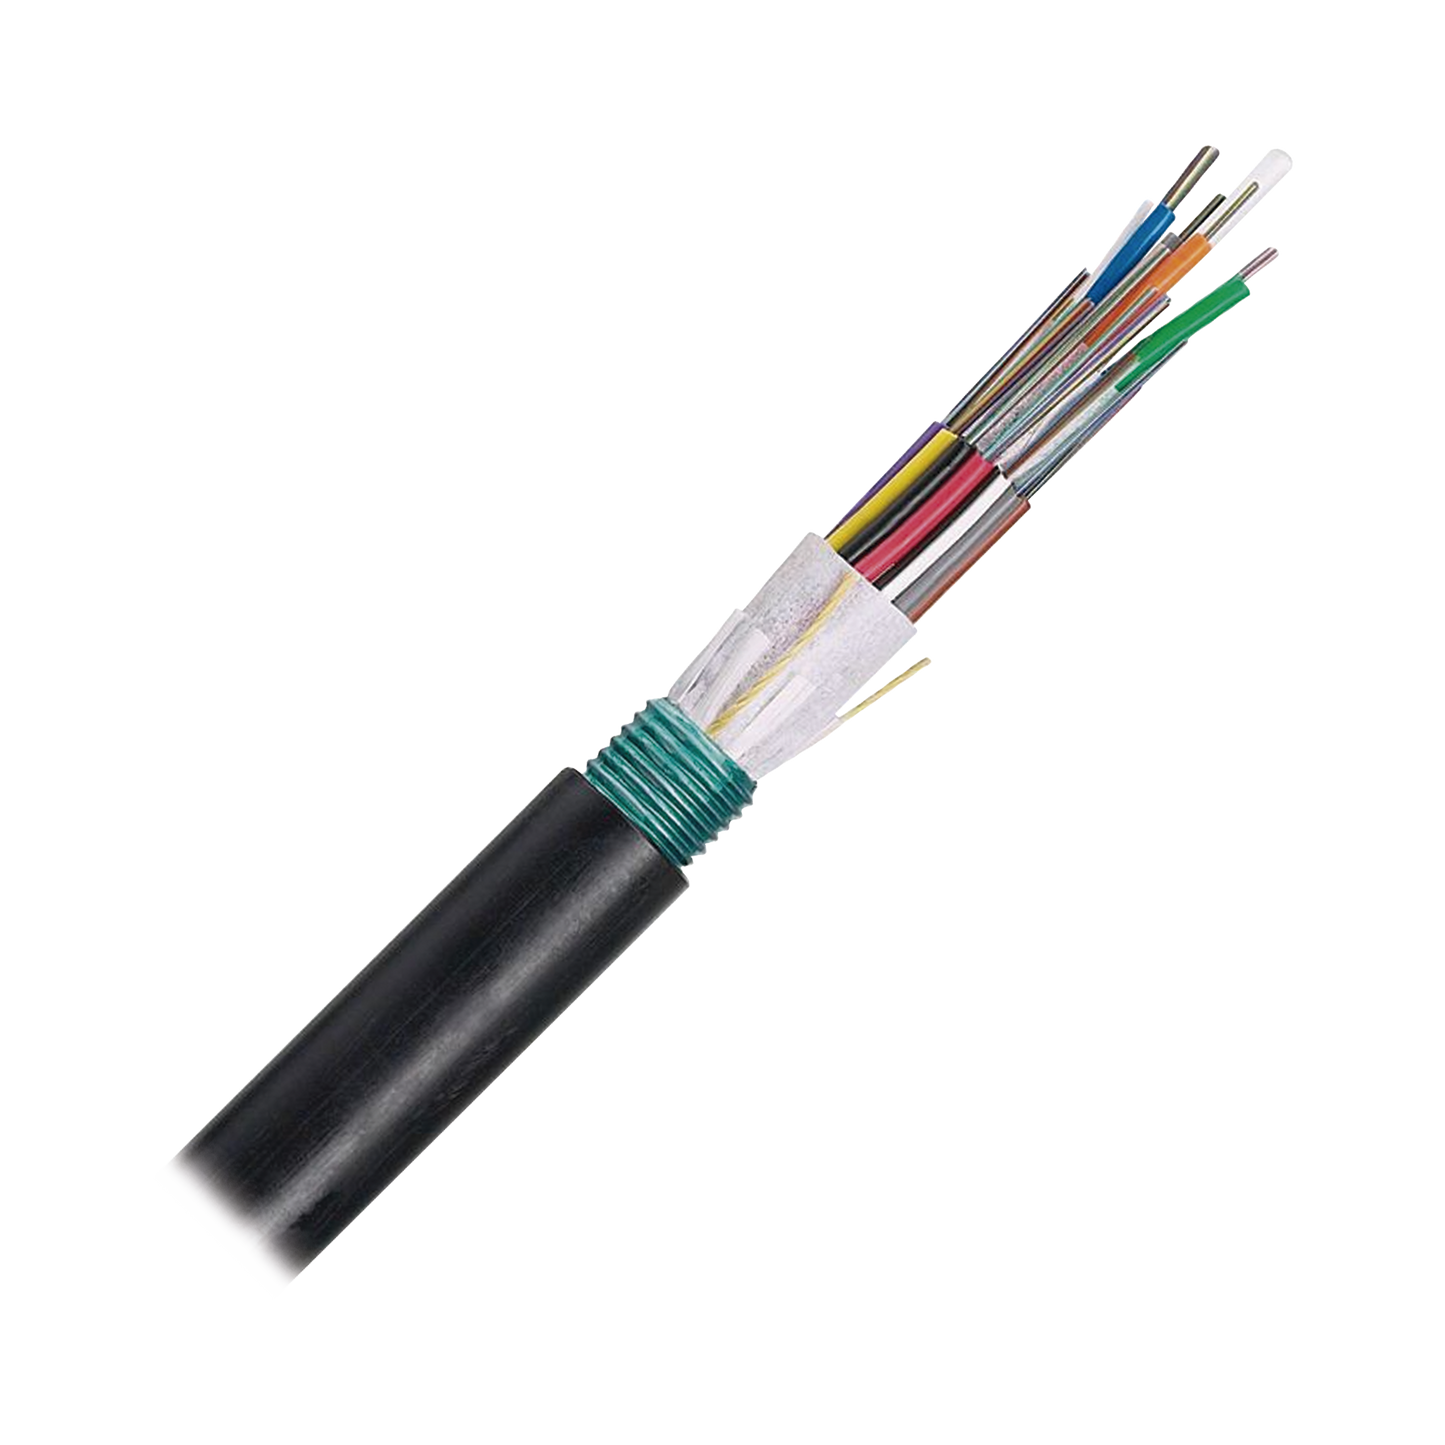 Cable de Fibra Óptica 6 hilos, OSP (Planta Externa), Armada, MDPE (Polietileno de Media densidad), Multimodo OM3 50/125 Optimizada, Precio Por Metro